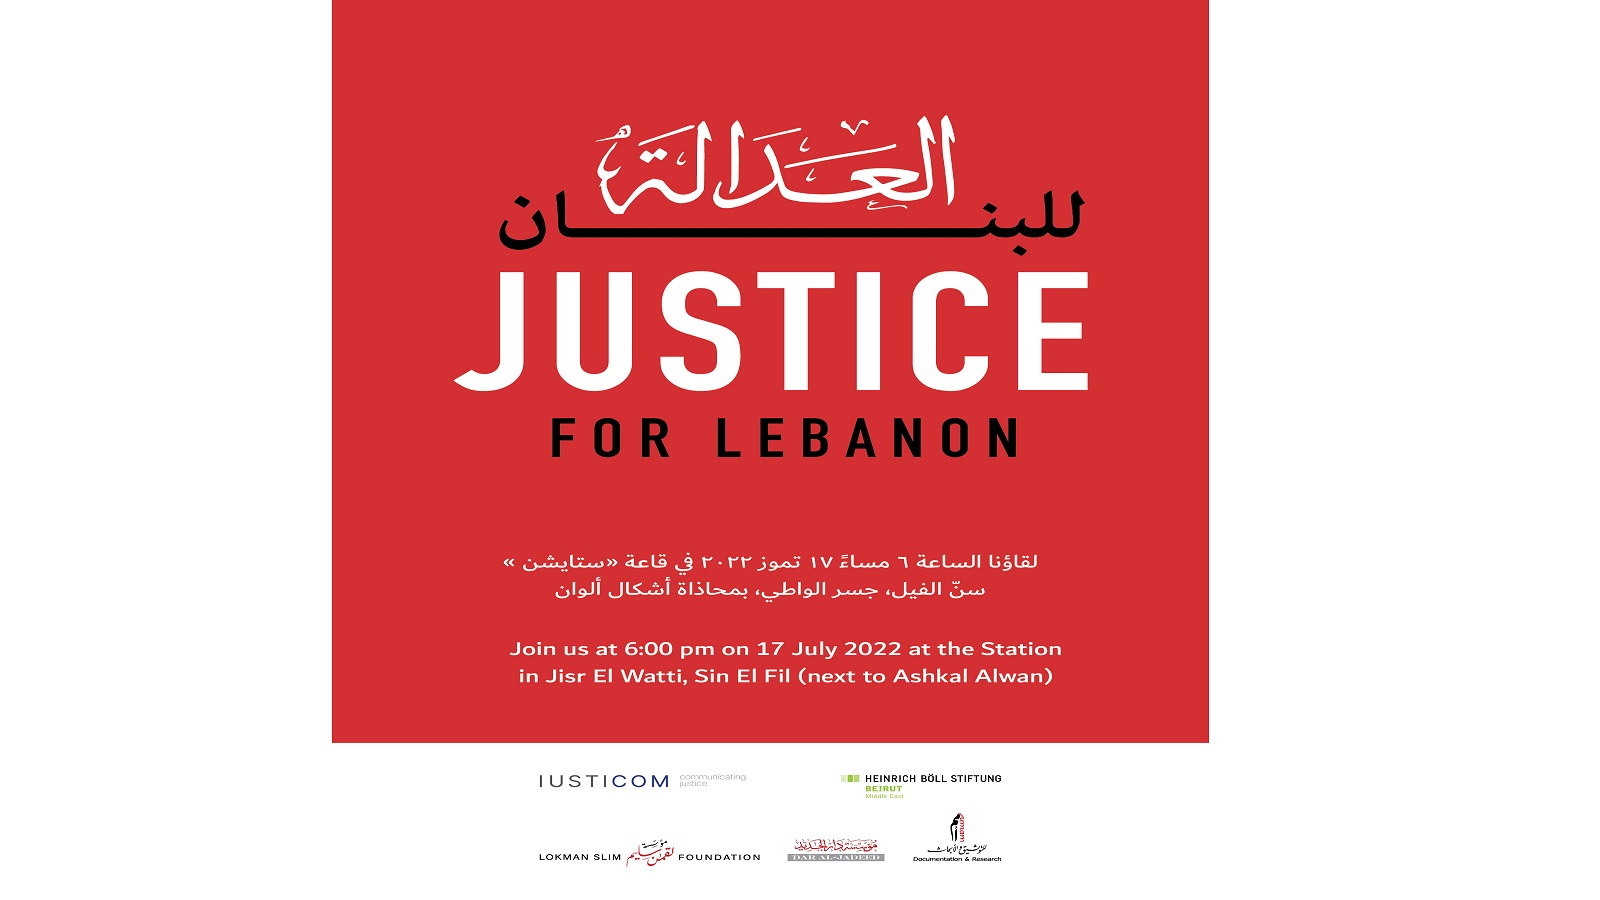 العدالة للبنان... بمناسبة اليوم العالمي للعدالة الدولية